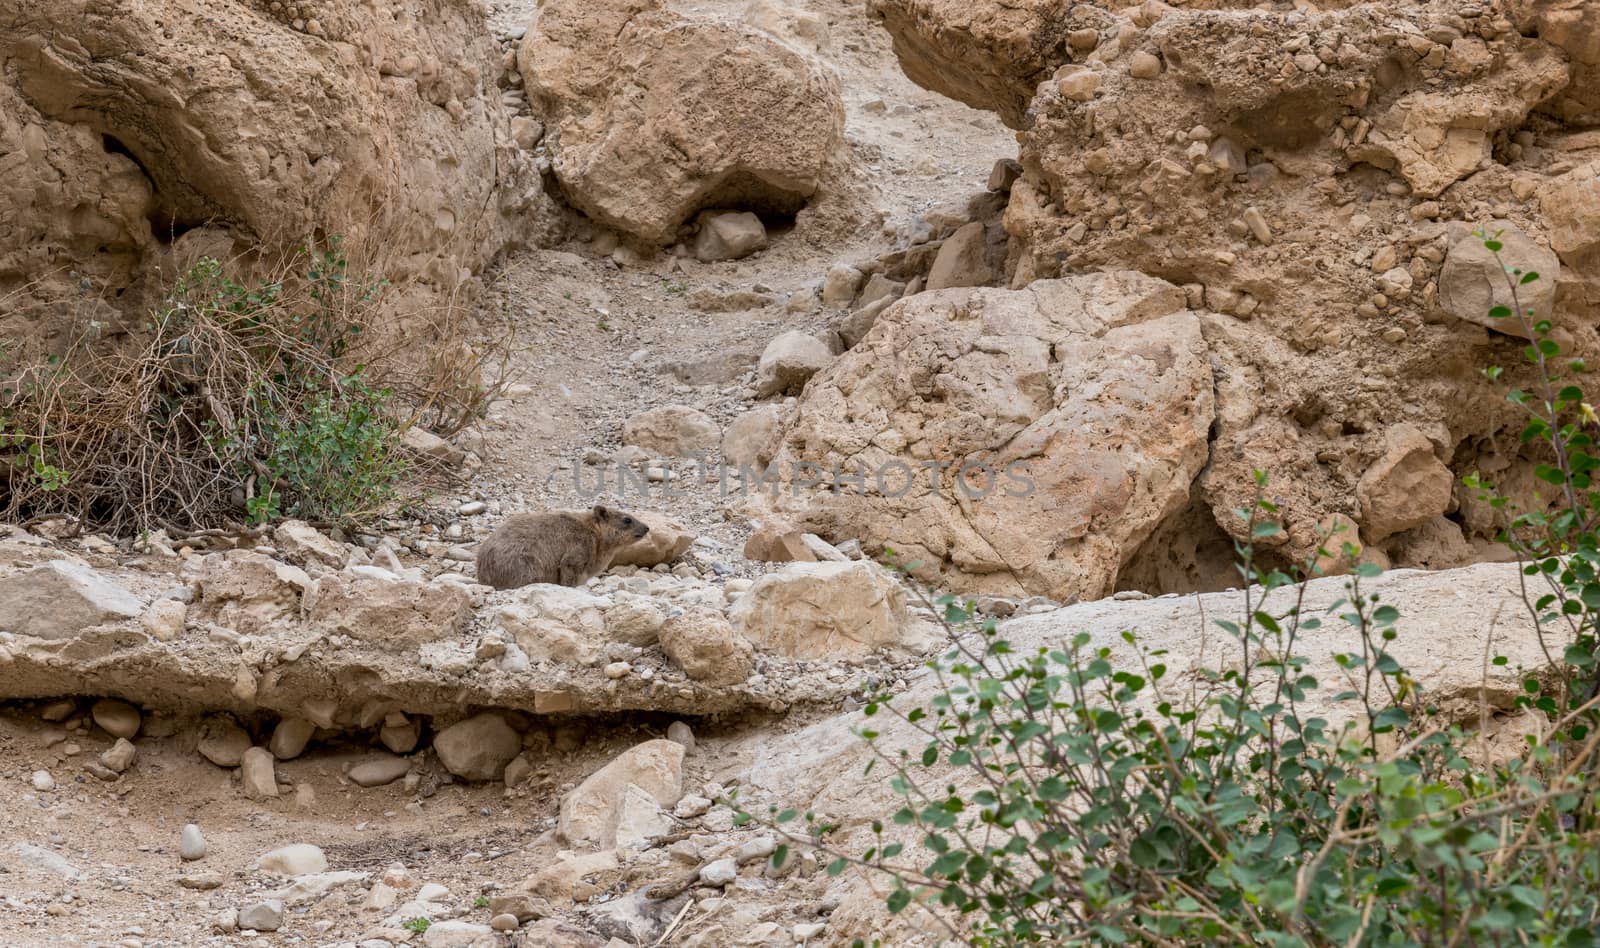 Rock hyrax in ein gedi israel by compuinfoto